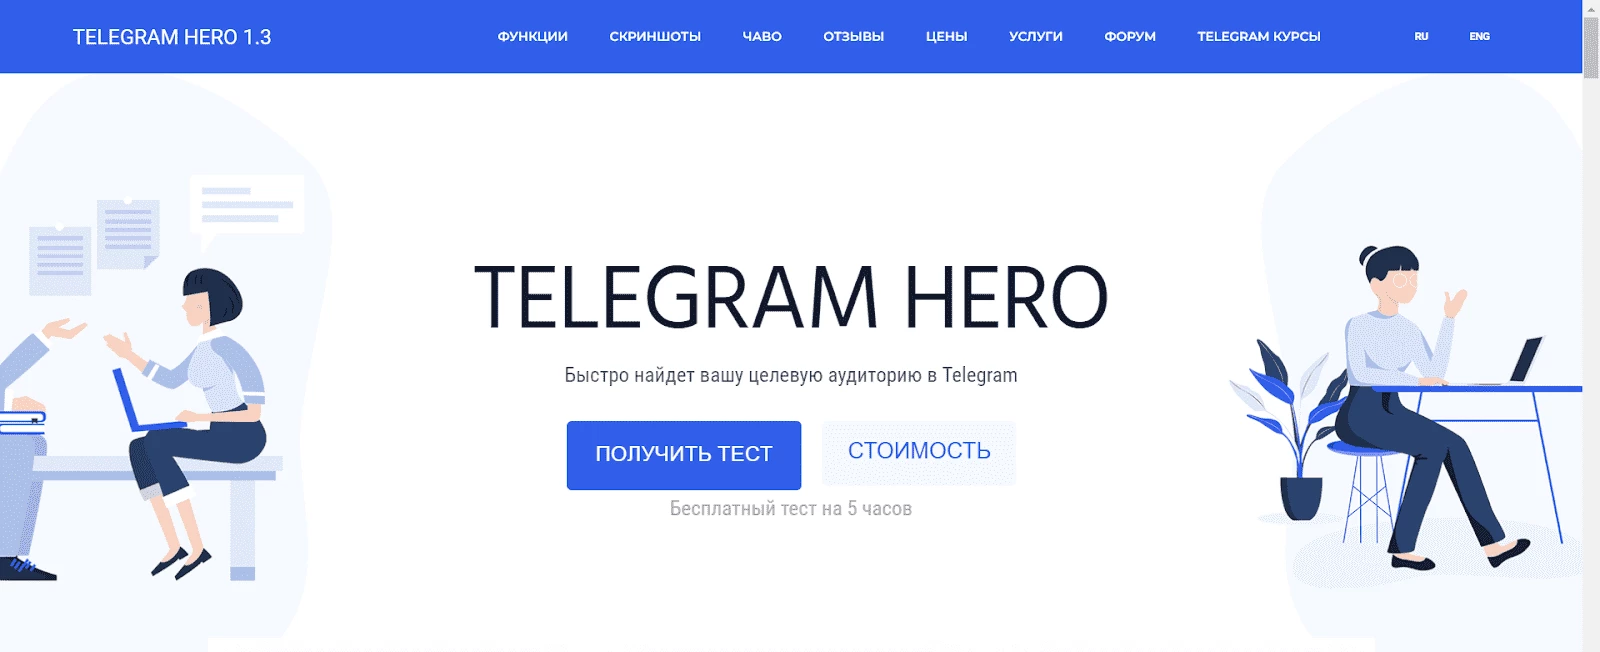 Страница софта Telegram Hero - сервиса для инвайтинга в Телеграм